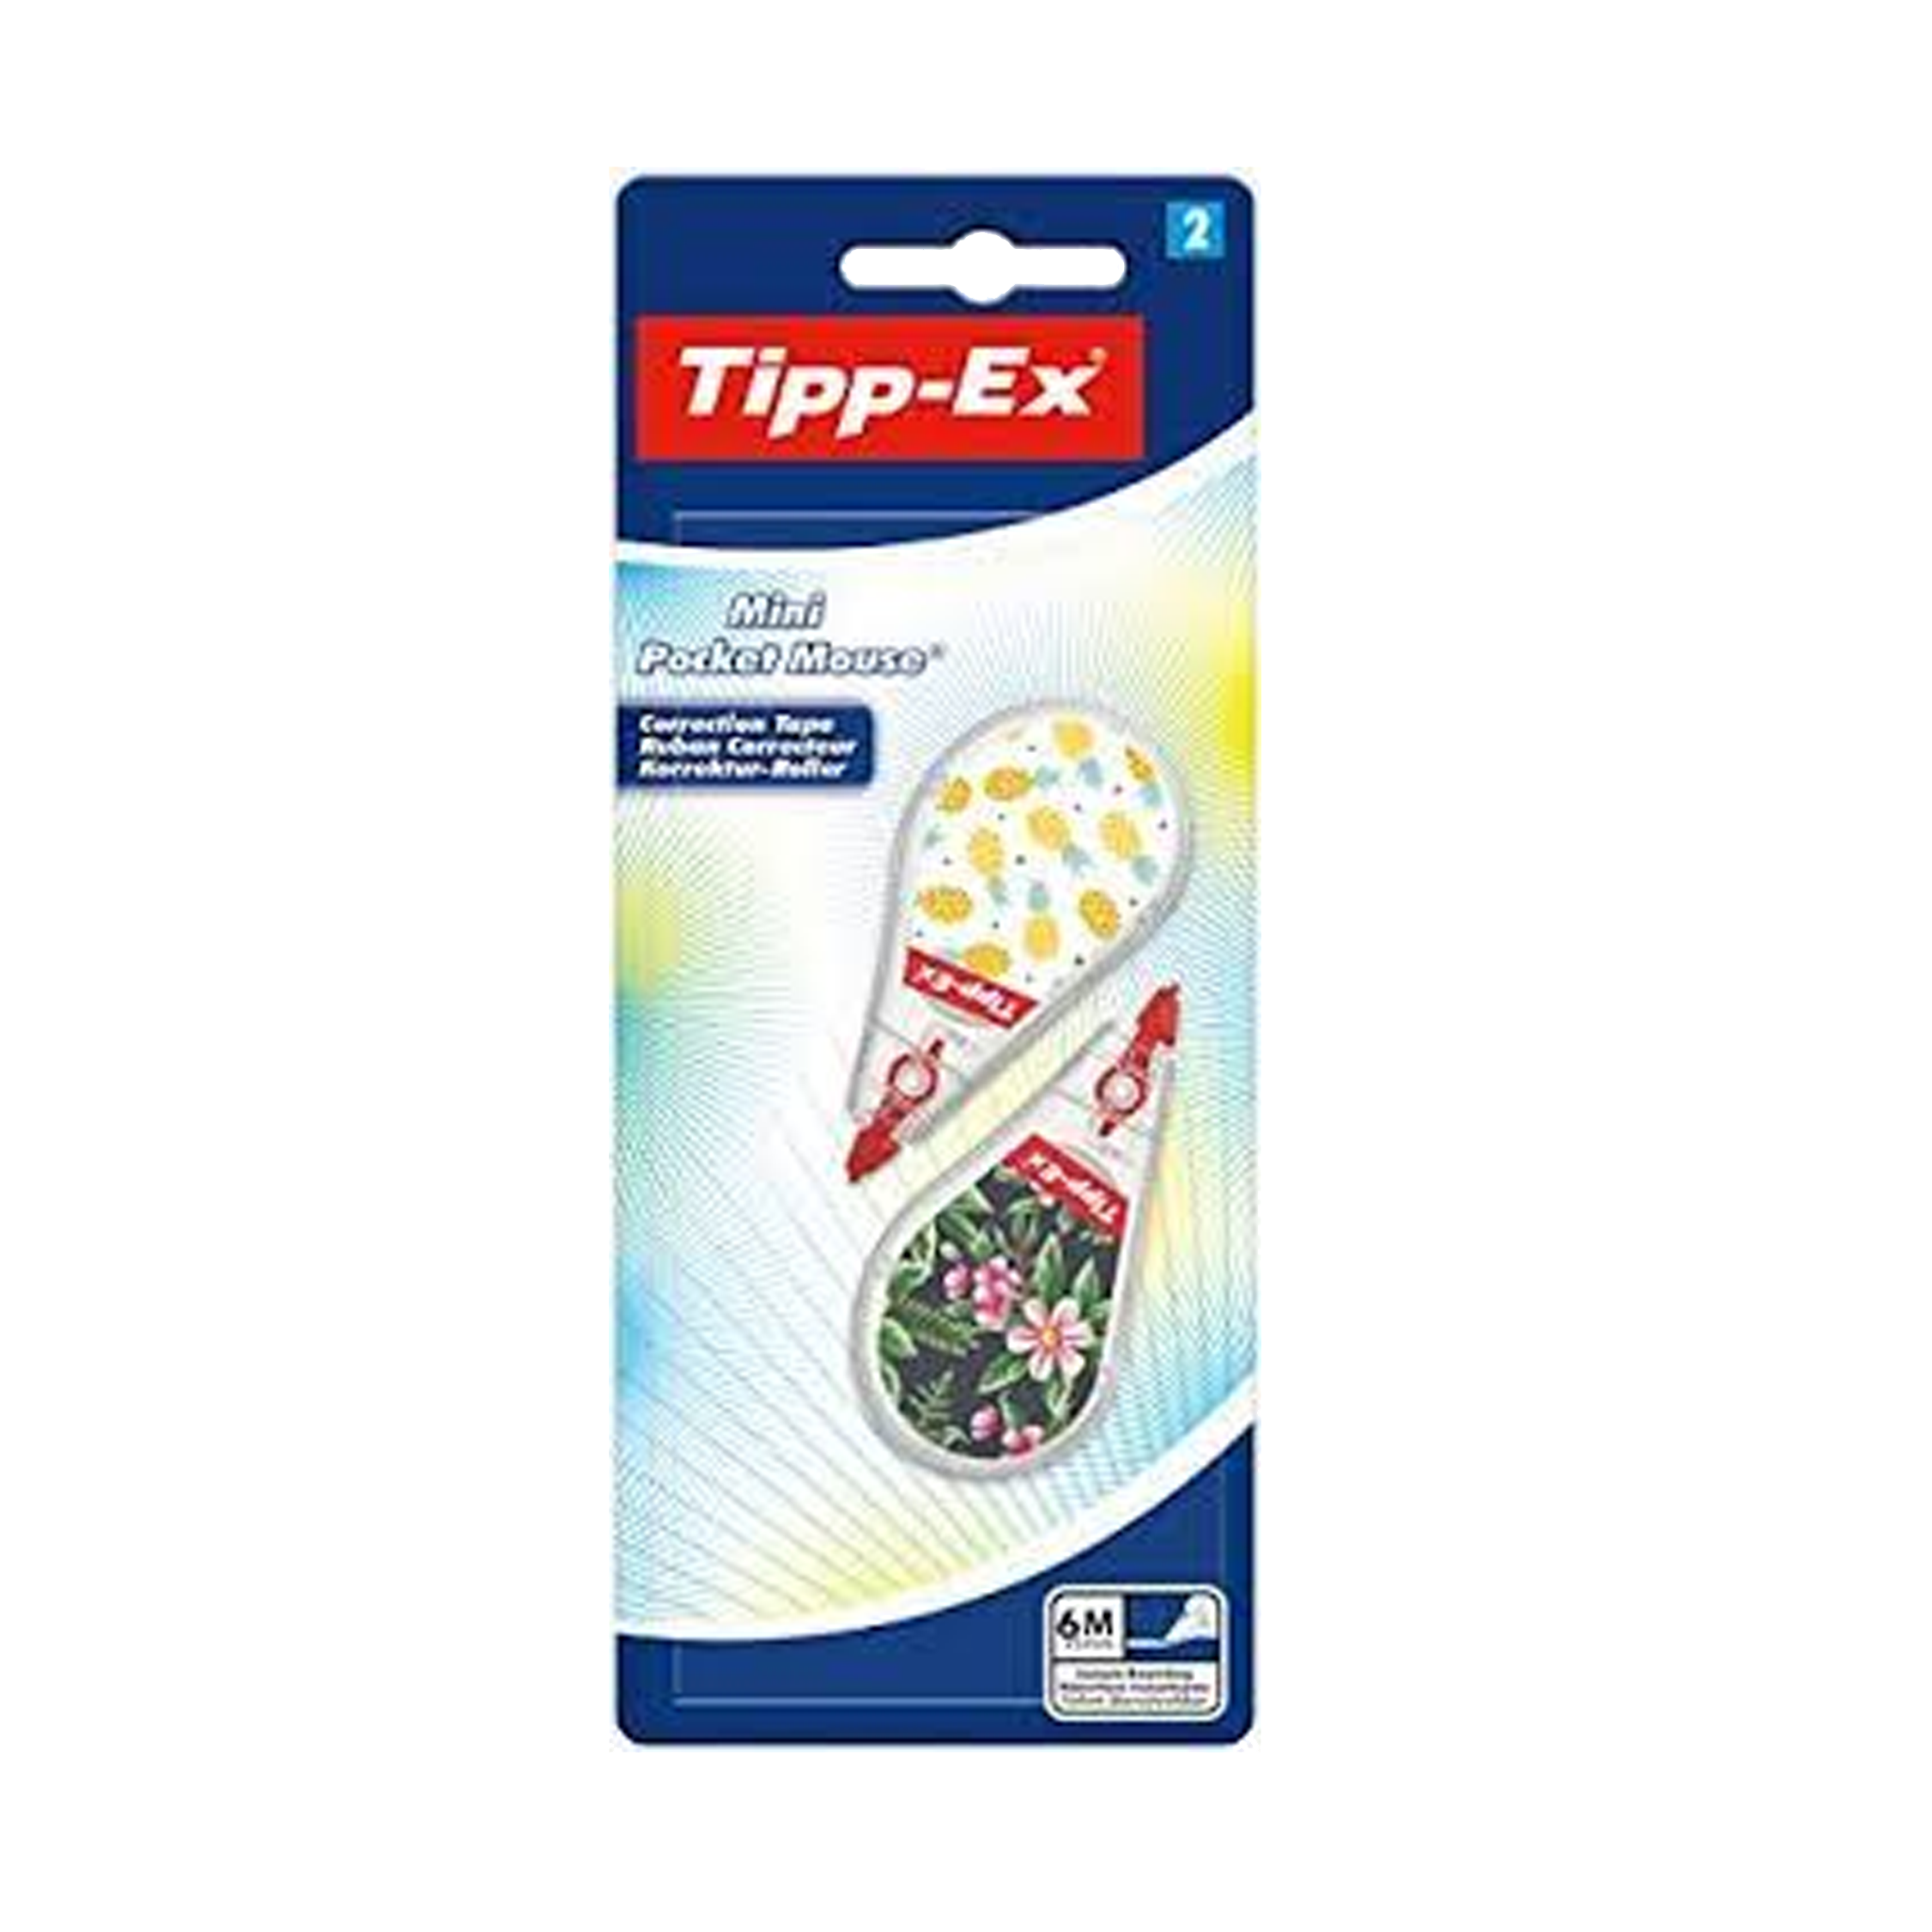 Tipp-Ex Mini Pocket Mouse Tape MENKELCHI